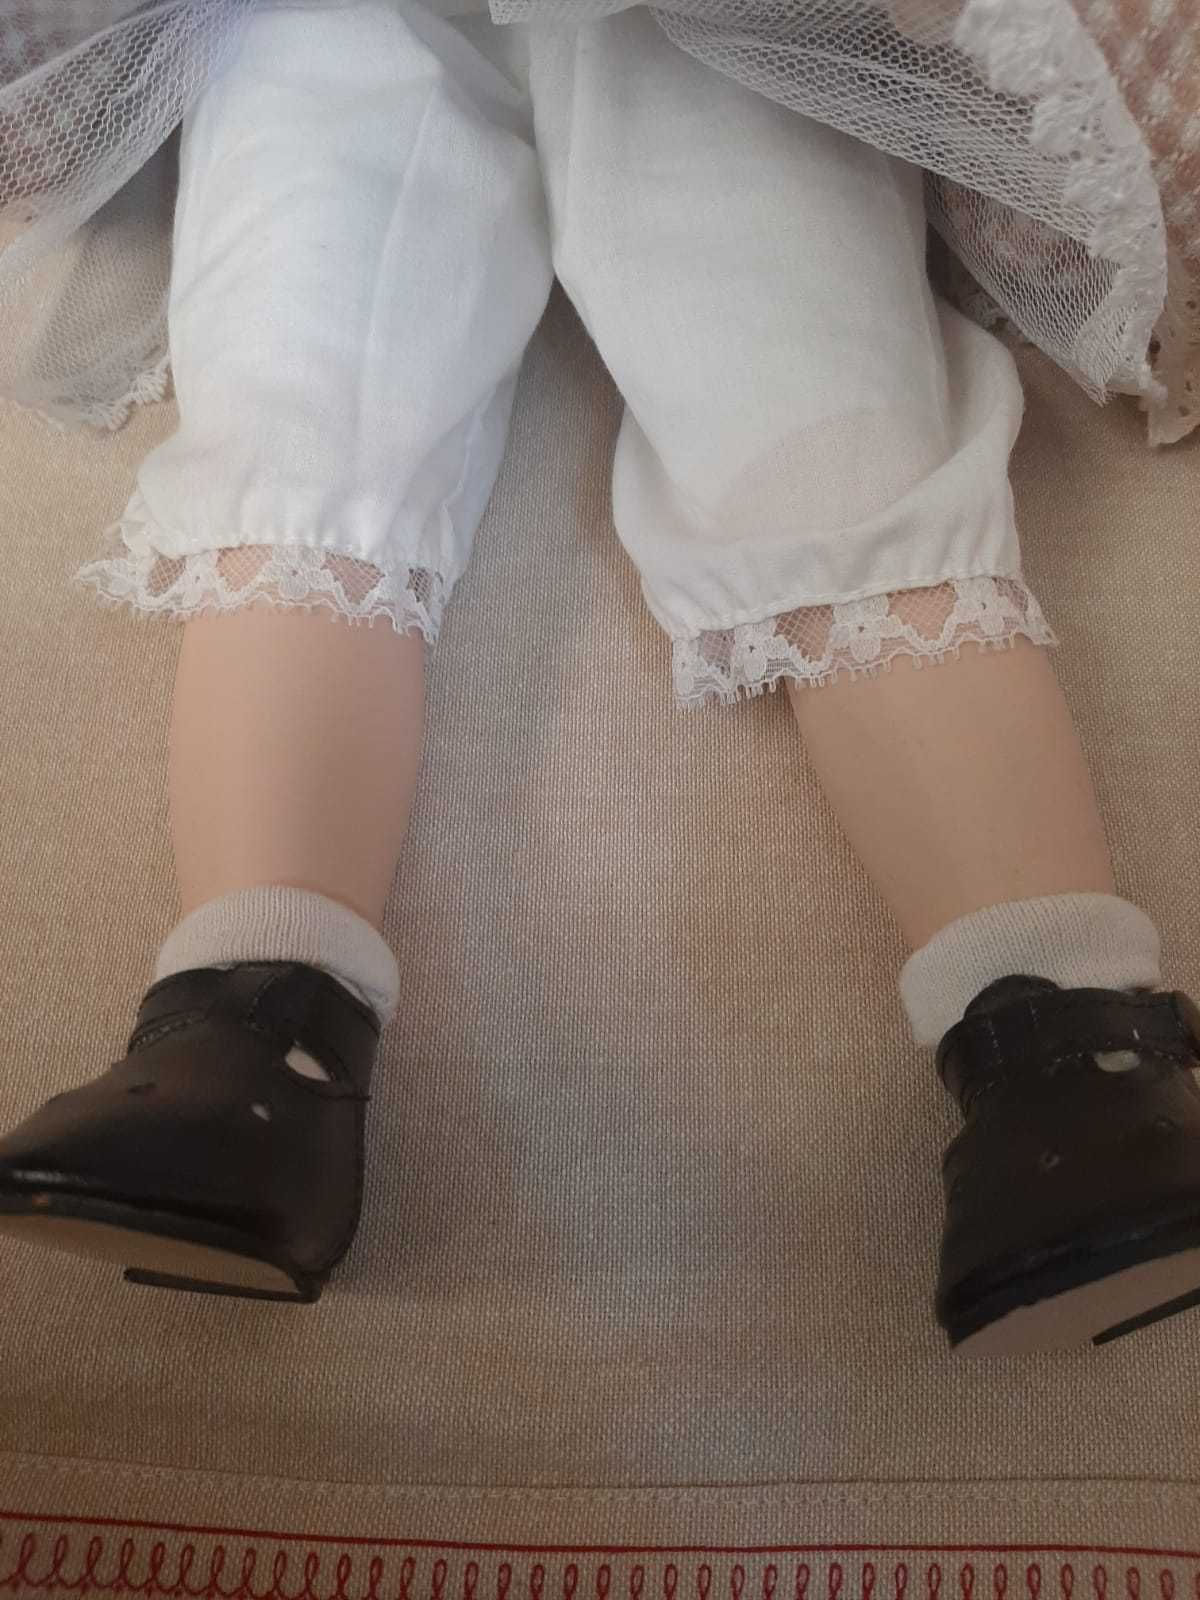 Продам красивую коллекционную куклу(58 см)